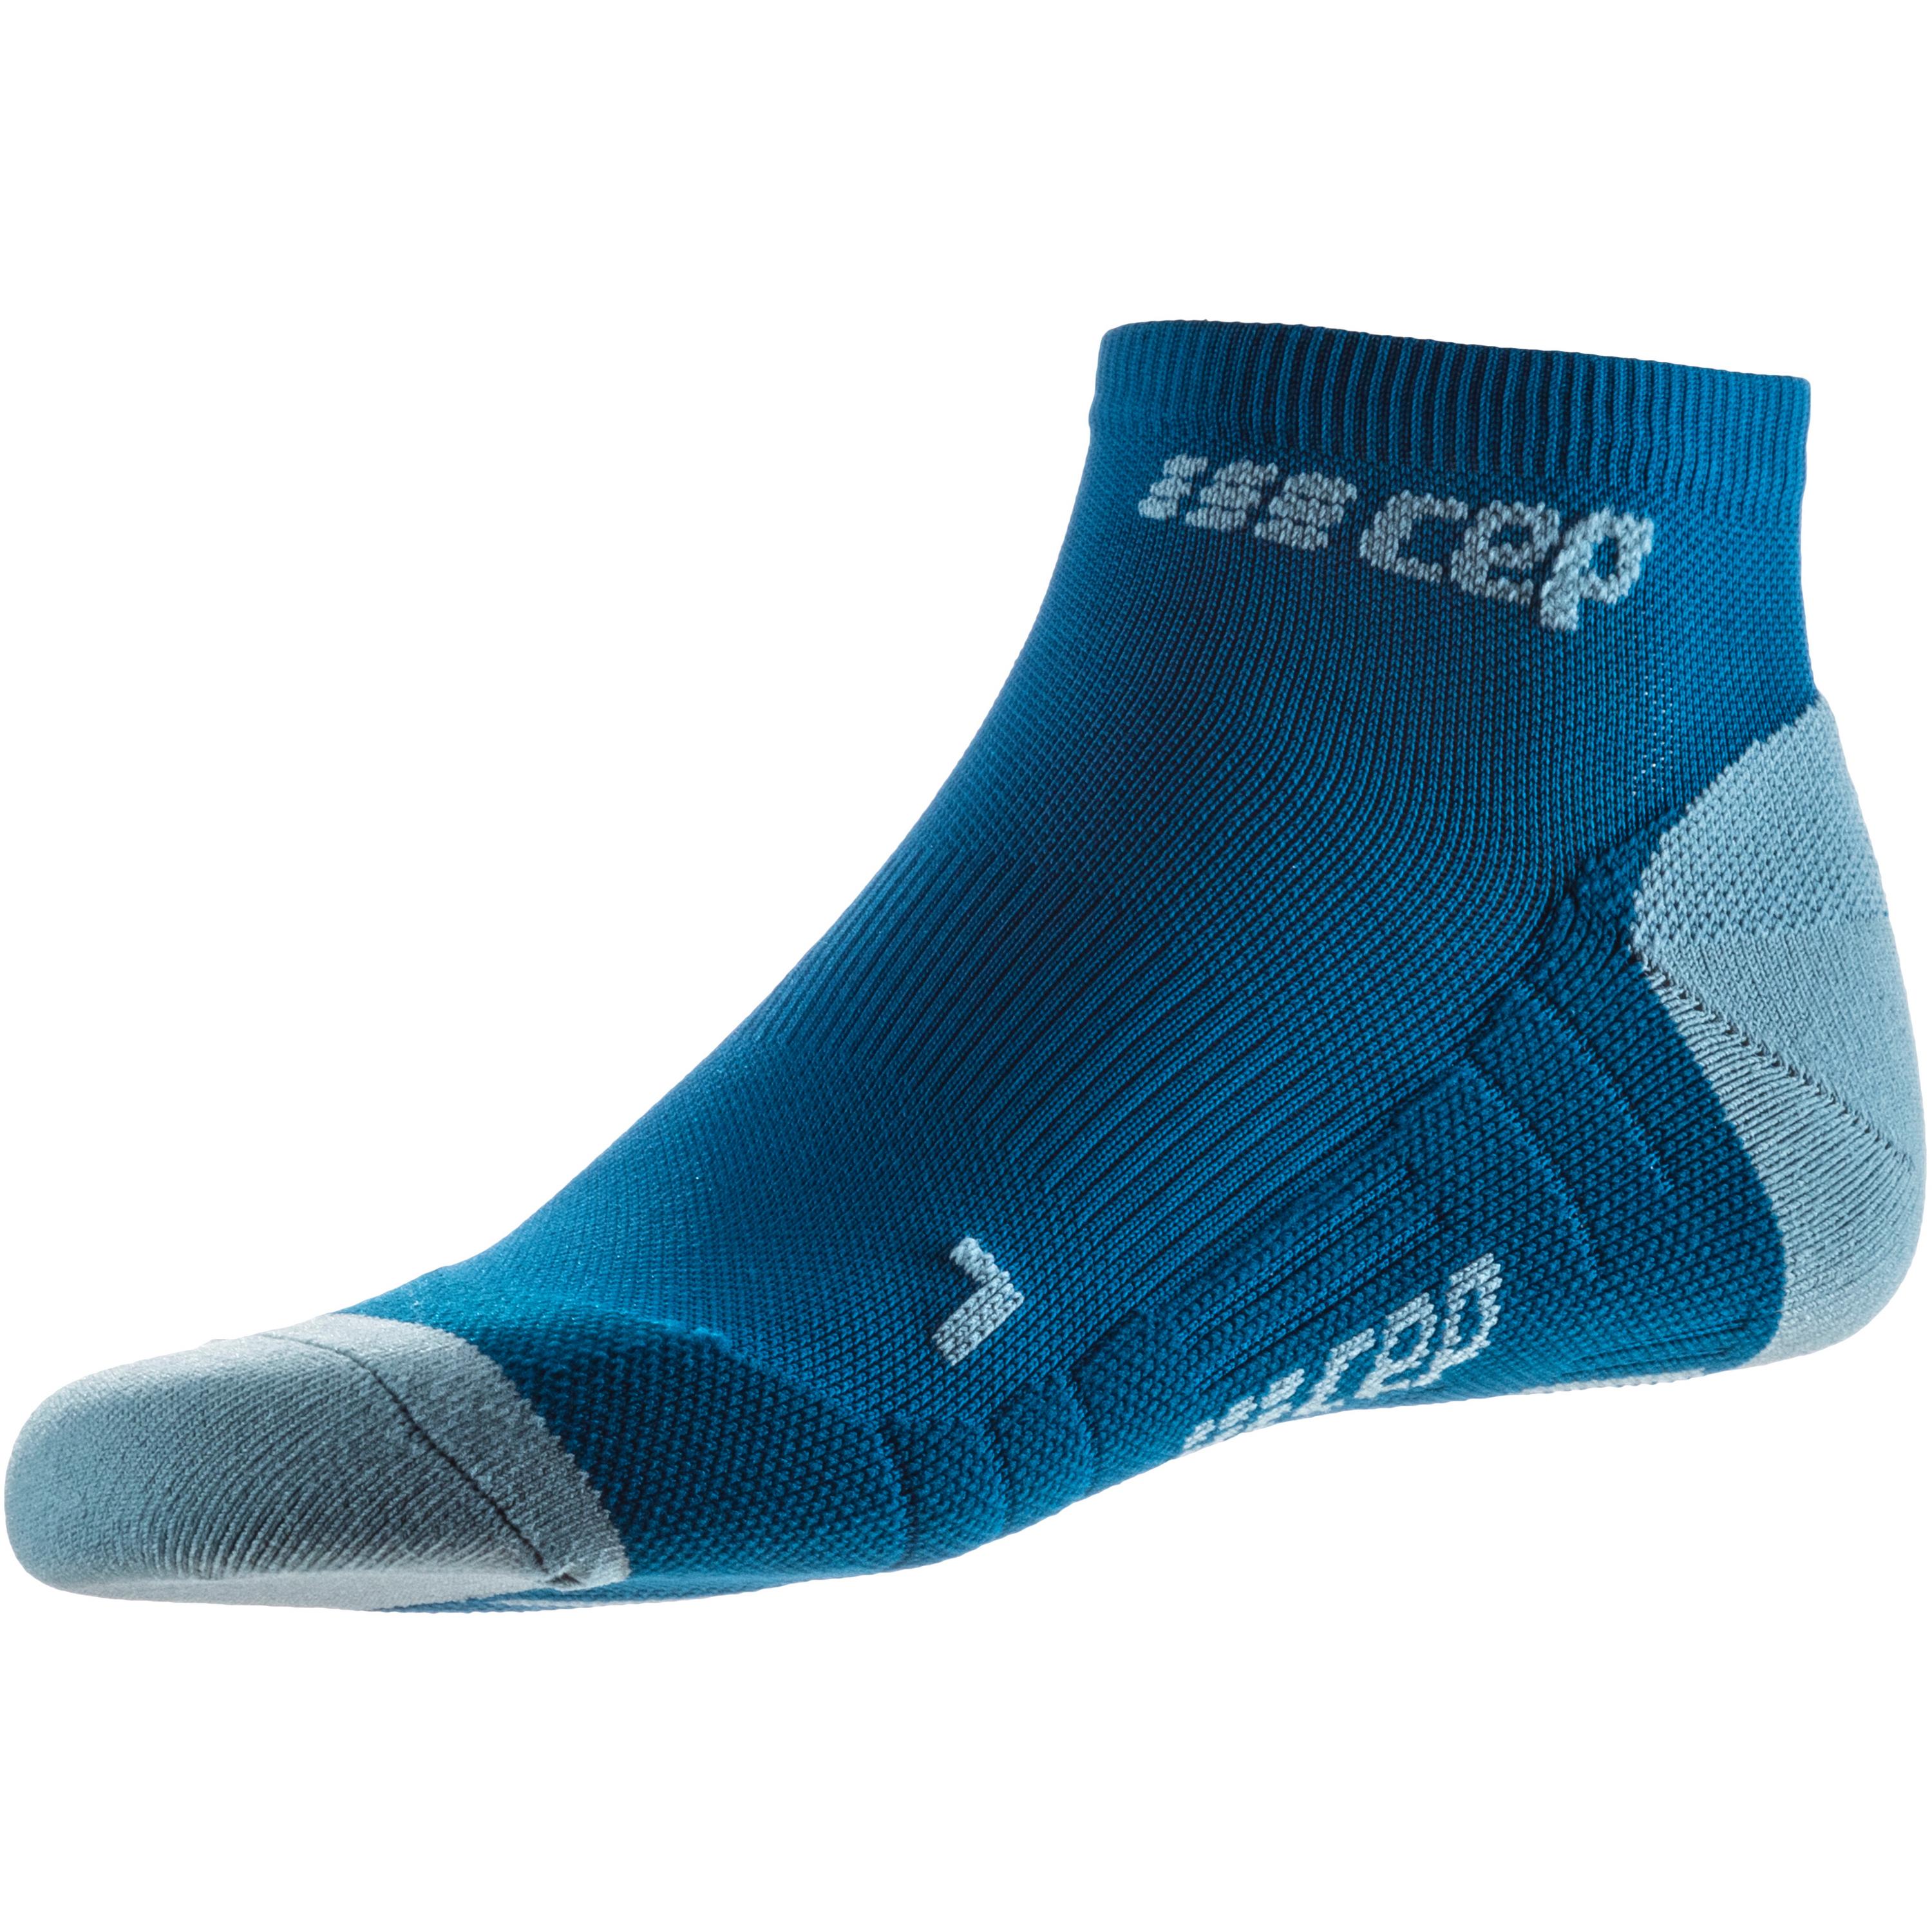 Image of CEP Low Cut Socks 3.0 Sportsocken Herren